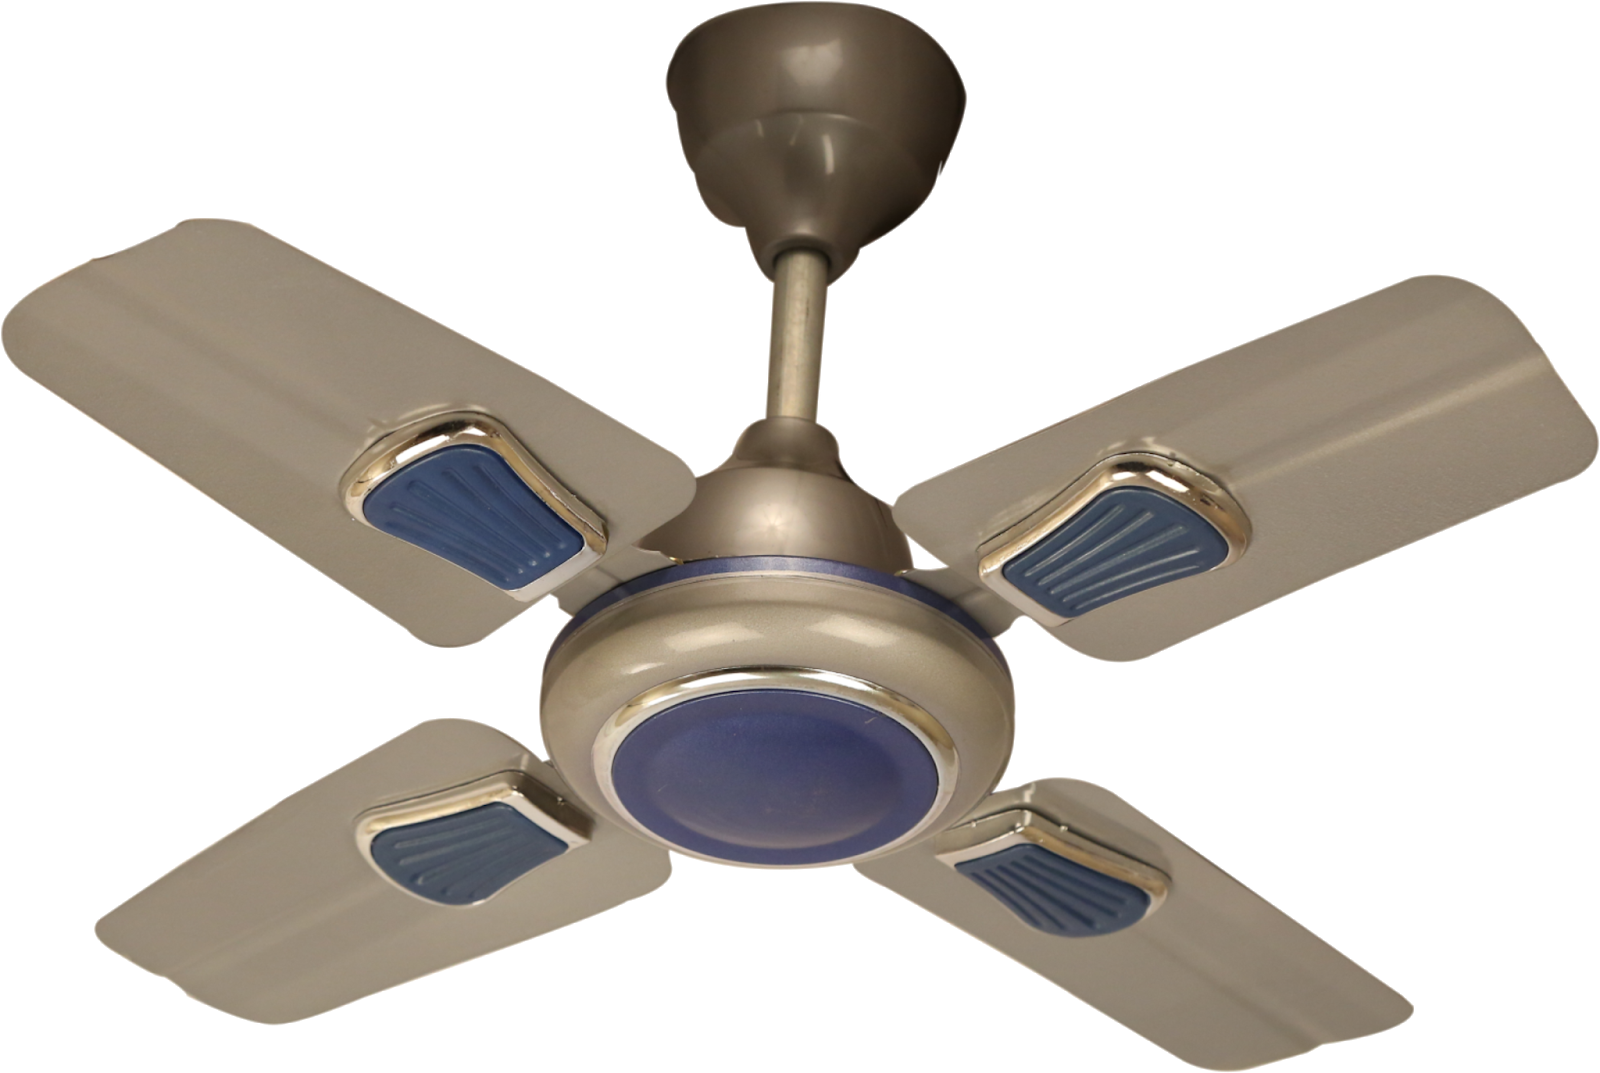 Ceiling Fan Image, Ceiling Fan, Ceiling Fan Png, Ceiling - Ceiling Fan Clipart (1600x1073), Png Download